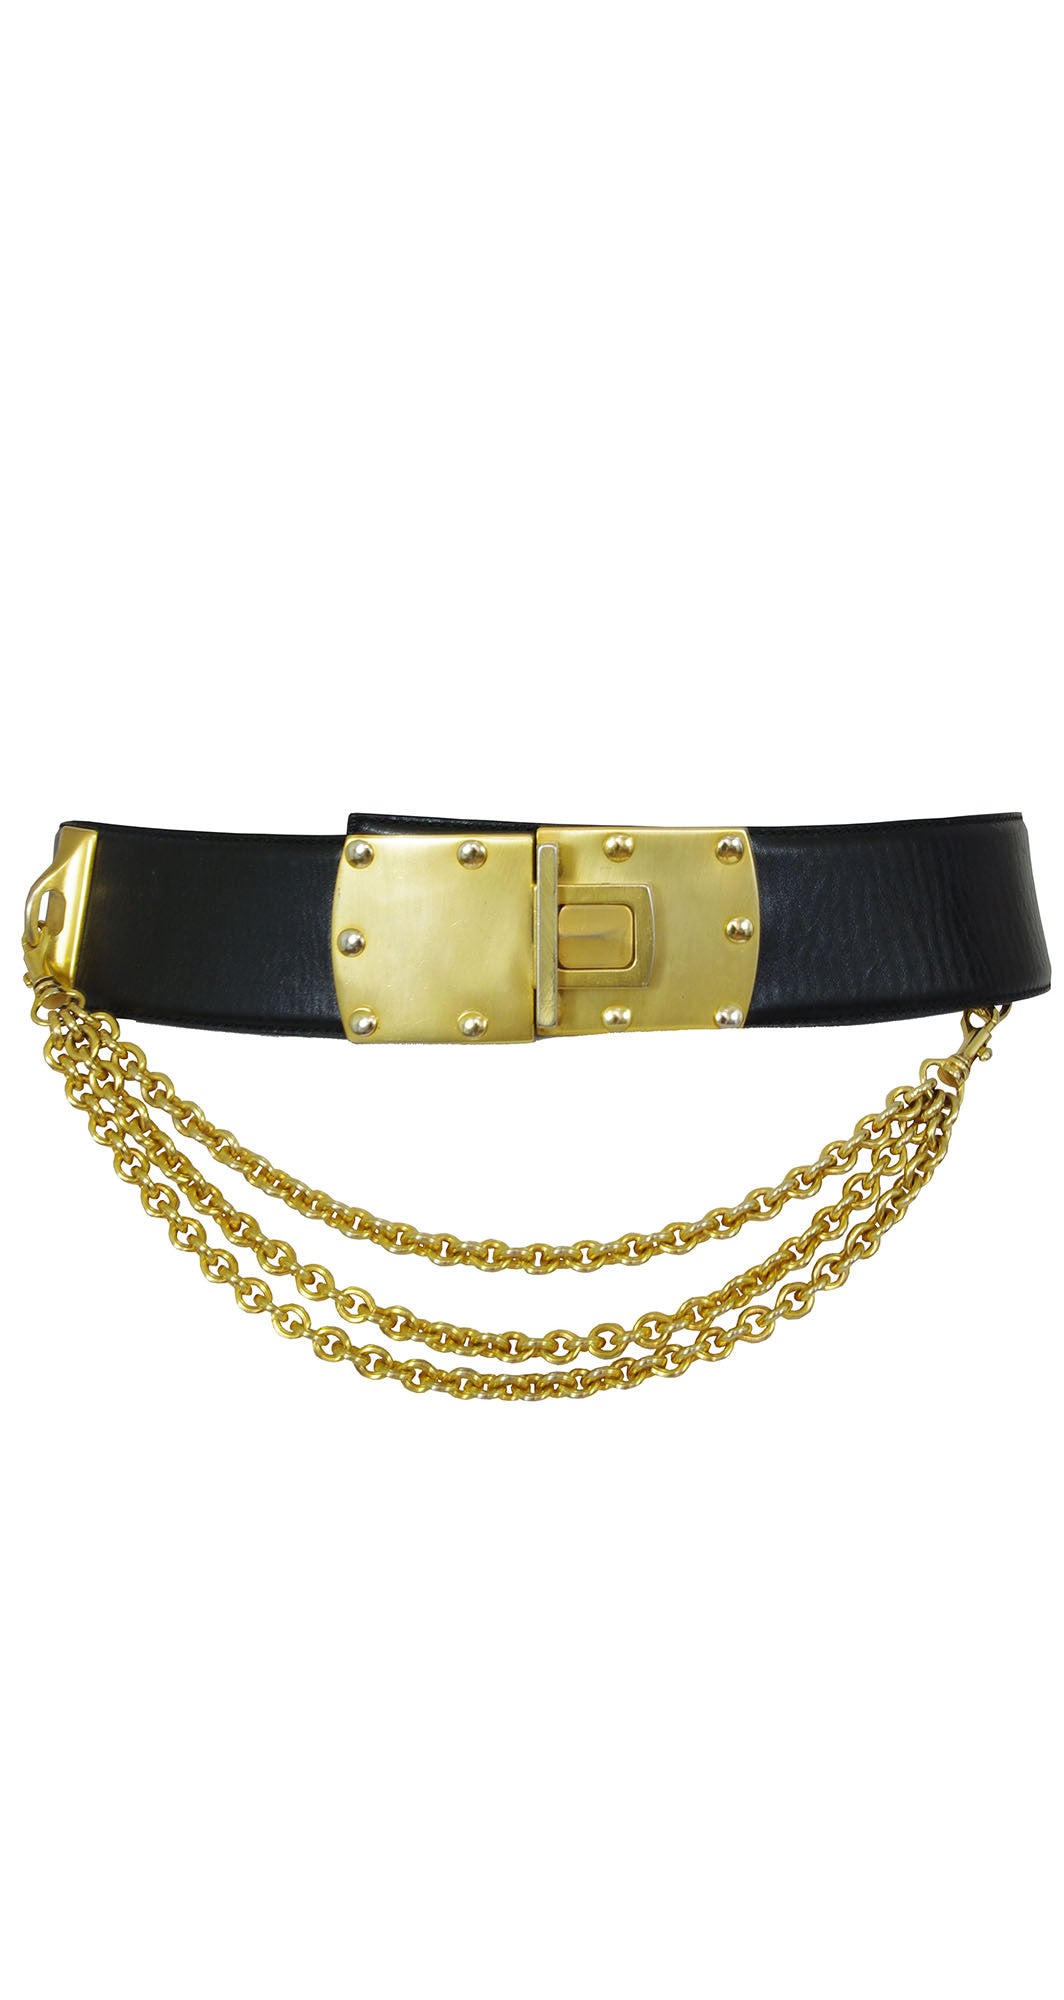 Fame Belts Black Leather Belt Gold Tone Hardware Made in Spain Size la -  beyond exchange